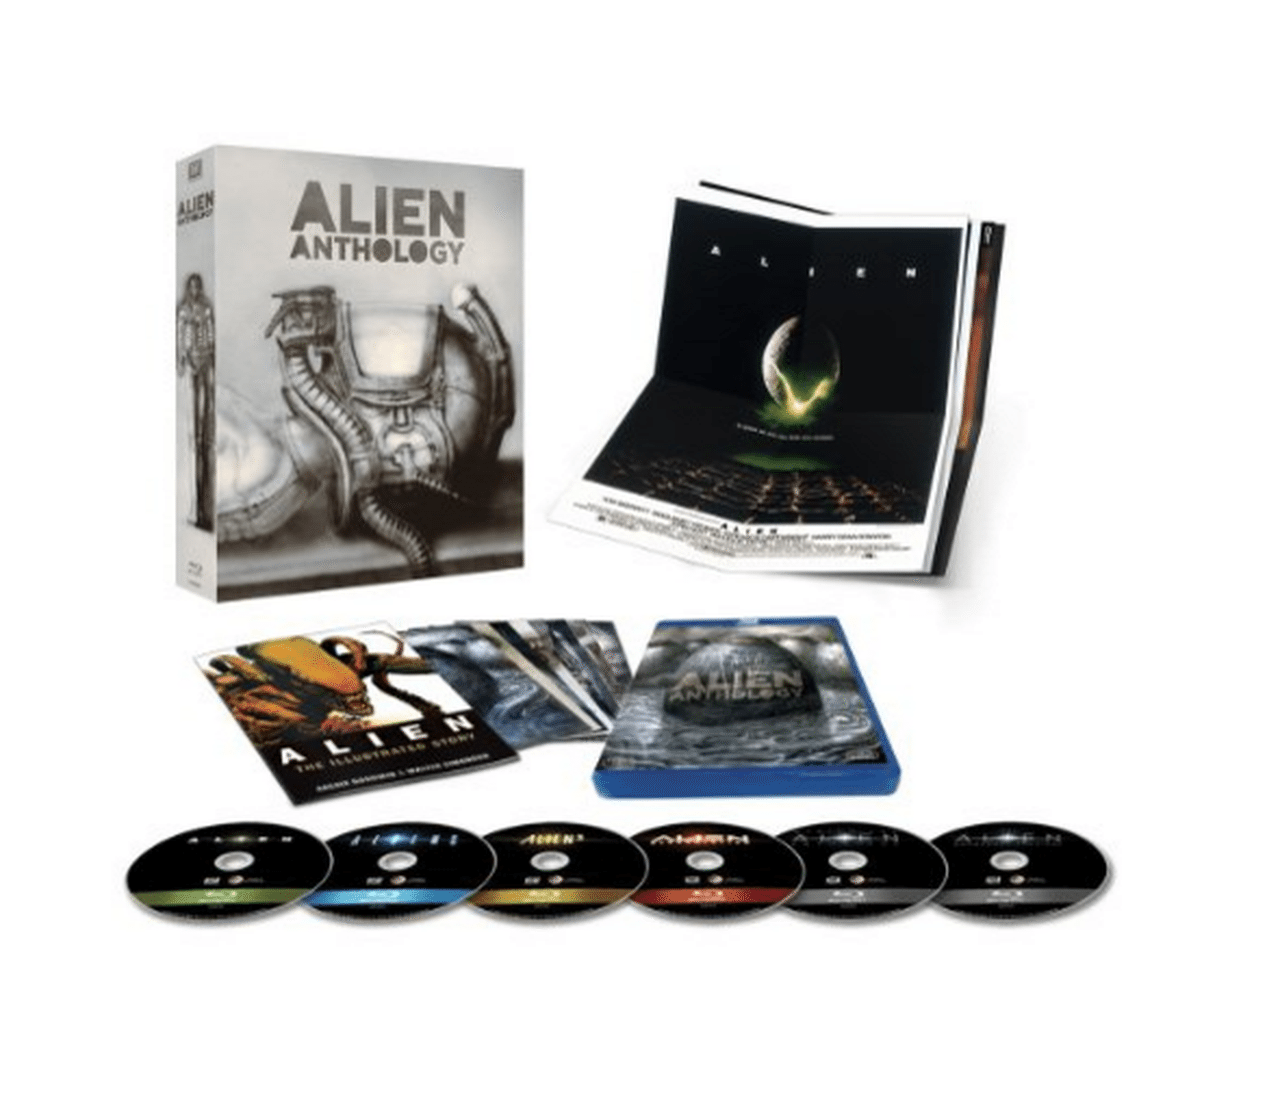 Oggi come molti sanno è l'Alien Day e come festeggiarlo al meglio regalandosi questo splendido cofanetti contenente ben 6 Blu-Ray a soli € 22,19.